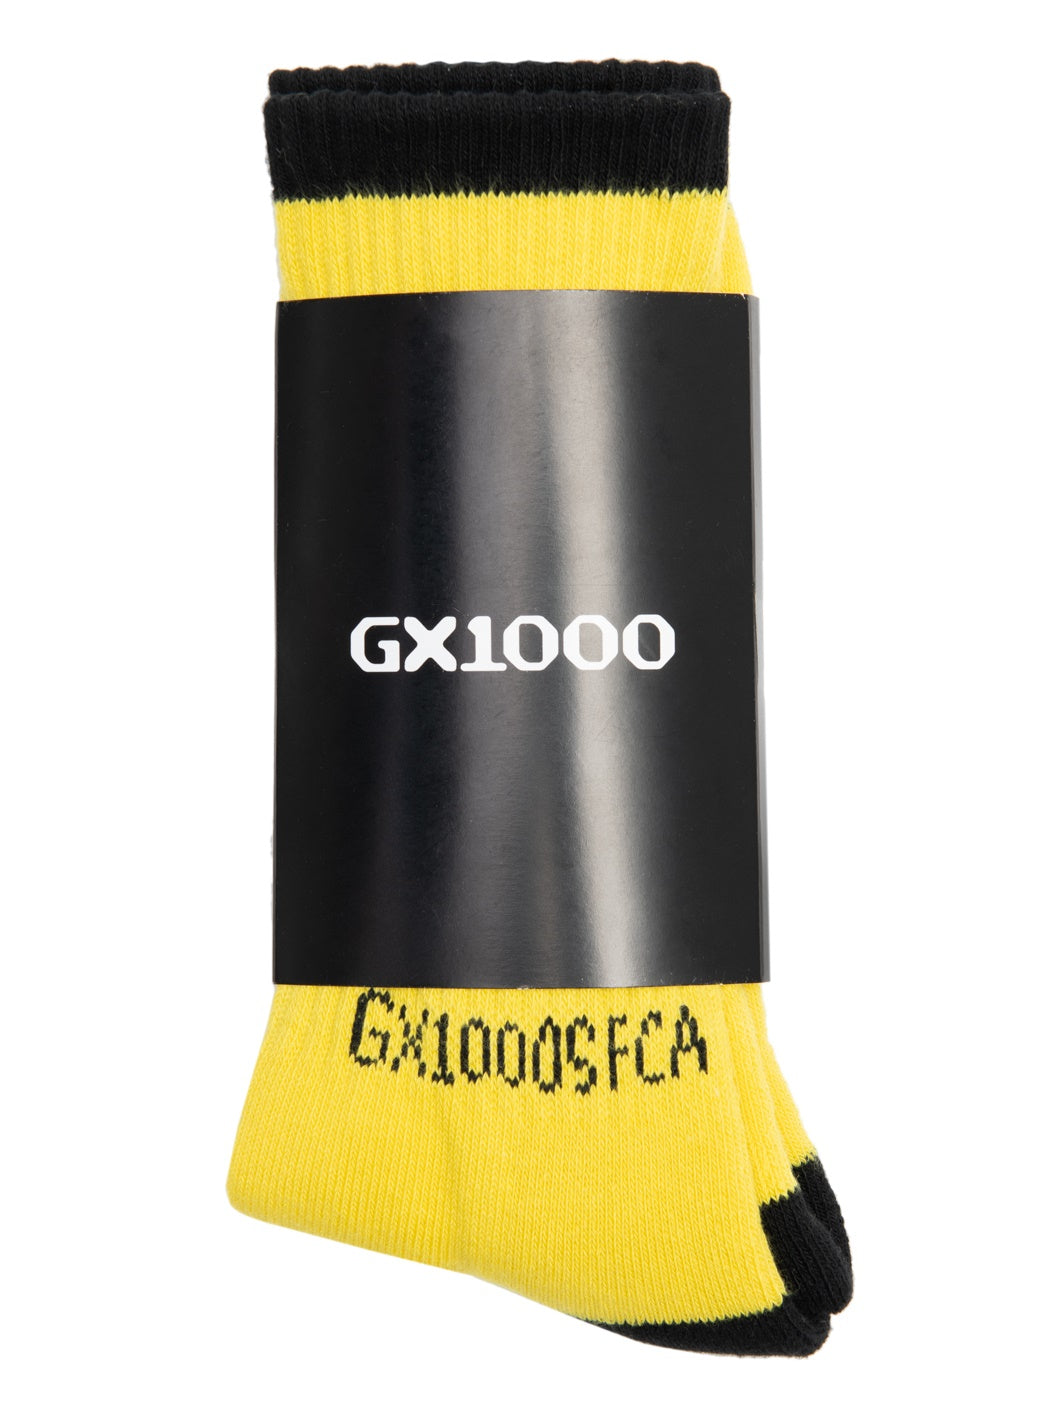 ถุงเท้ากันกรด GX1000 - สีเหลือง